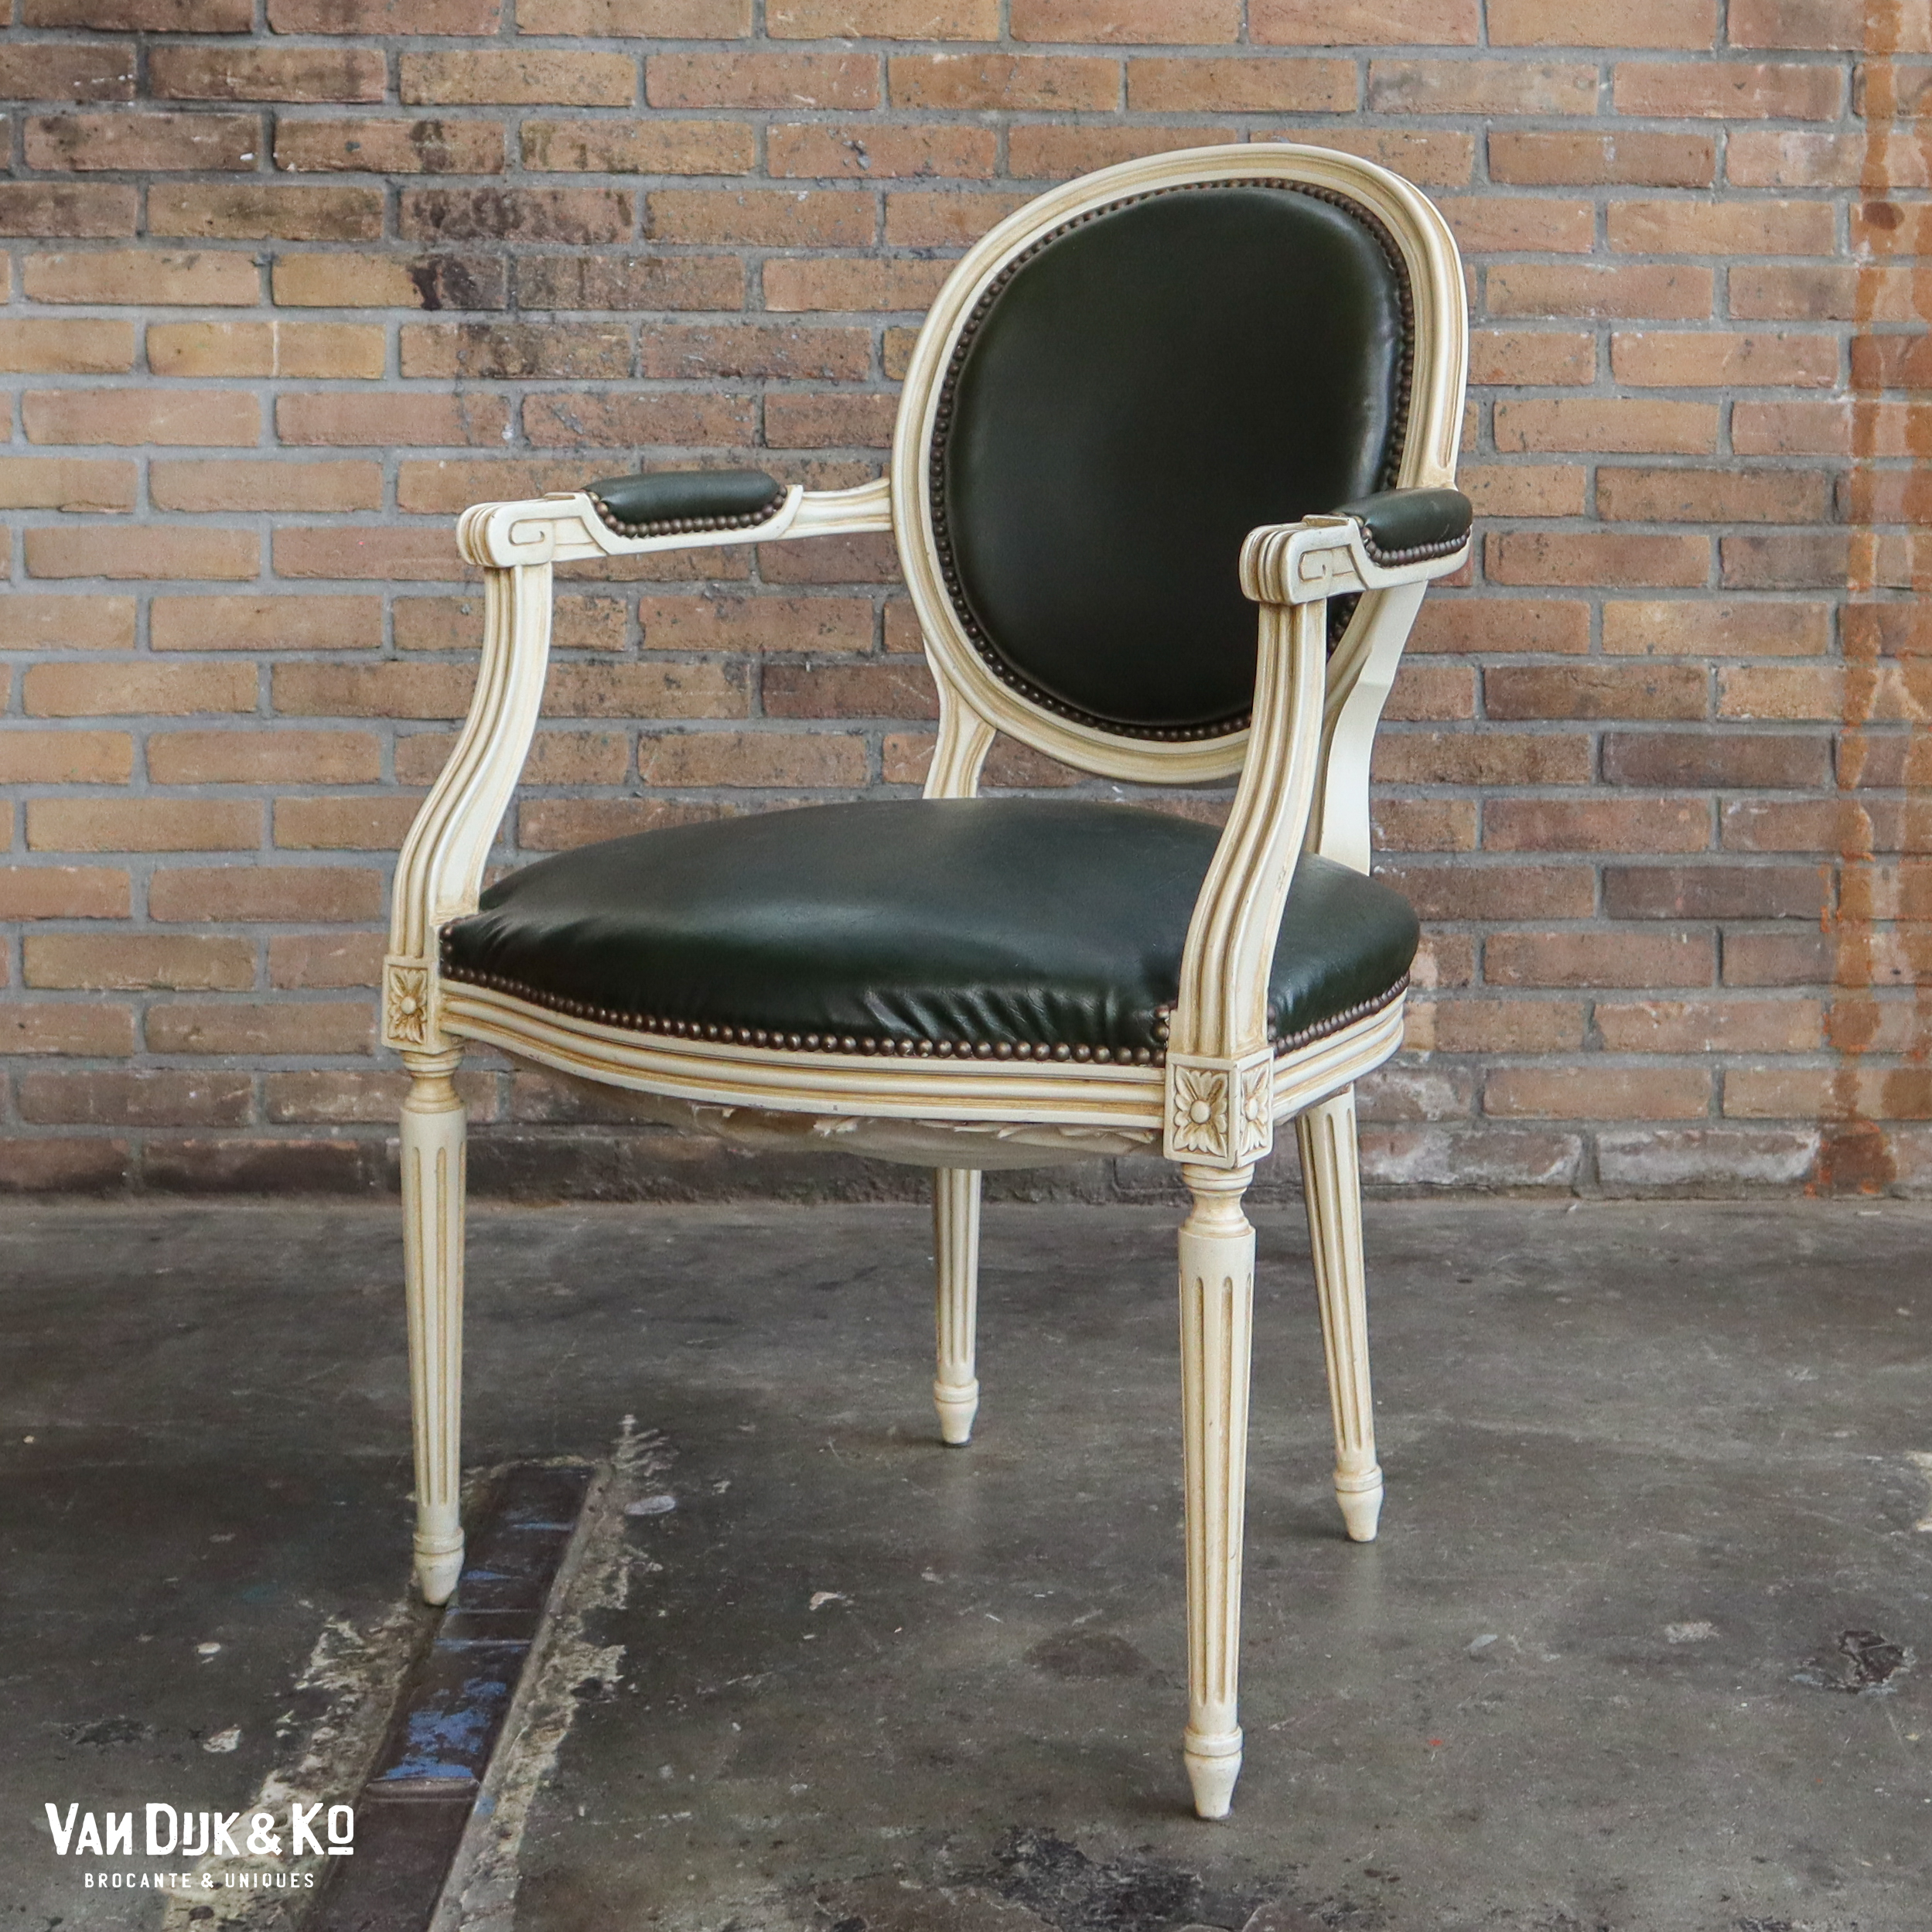 verlangen Over het algemeen groentje Vintage Louis XV stoel » Van Dijk & Ko